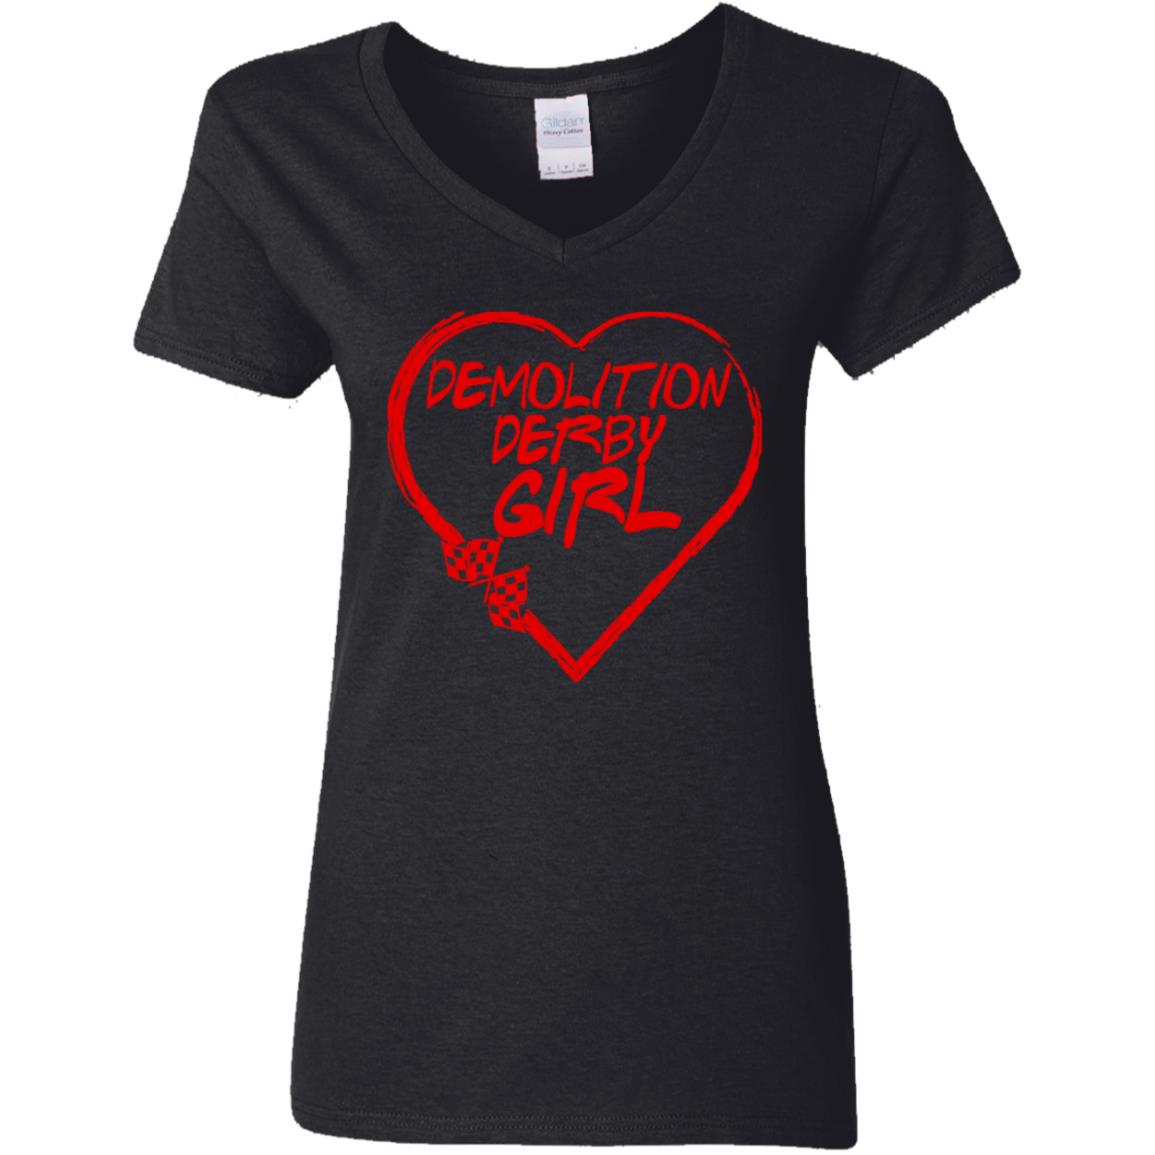 Demolition Derby Girl Heart Ladies' 5.3 oz. V-Neck T-Shirt